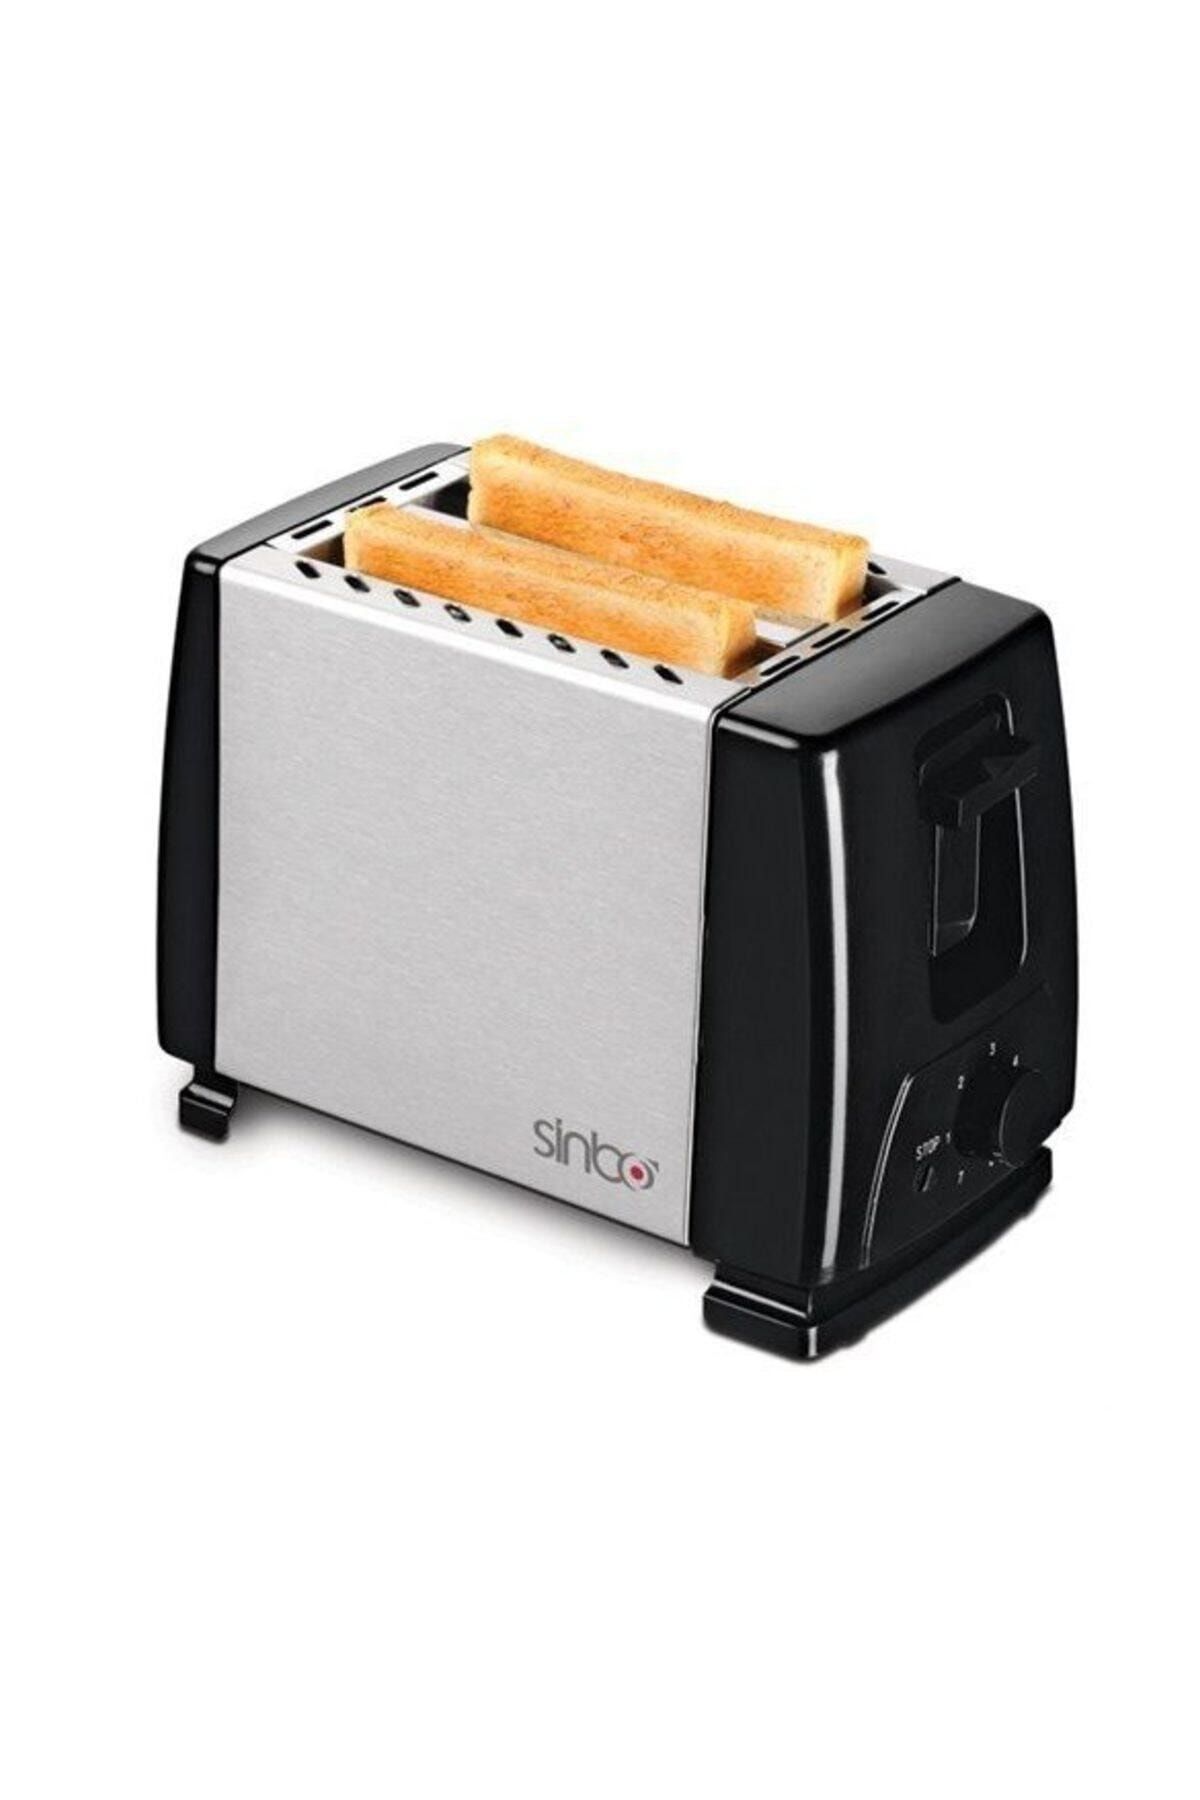 Sinbo ST-2416 Ekmek Kızartma Makinesi